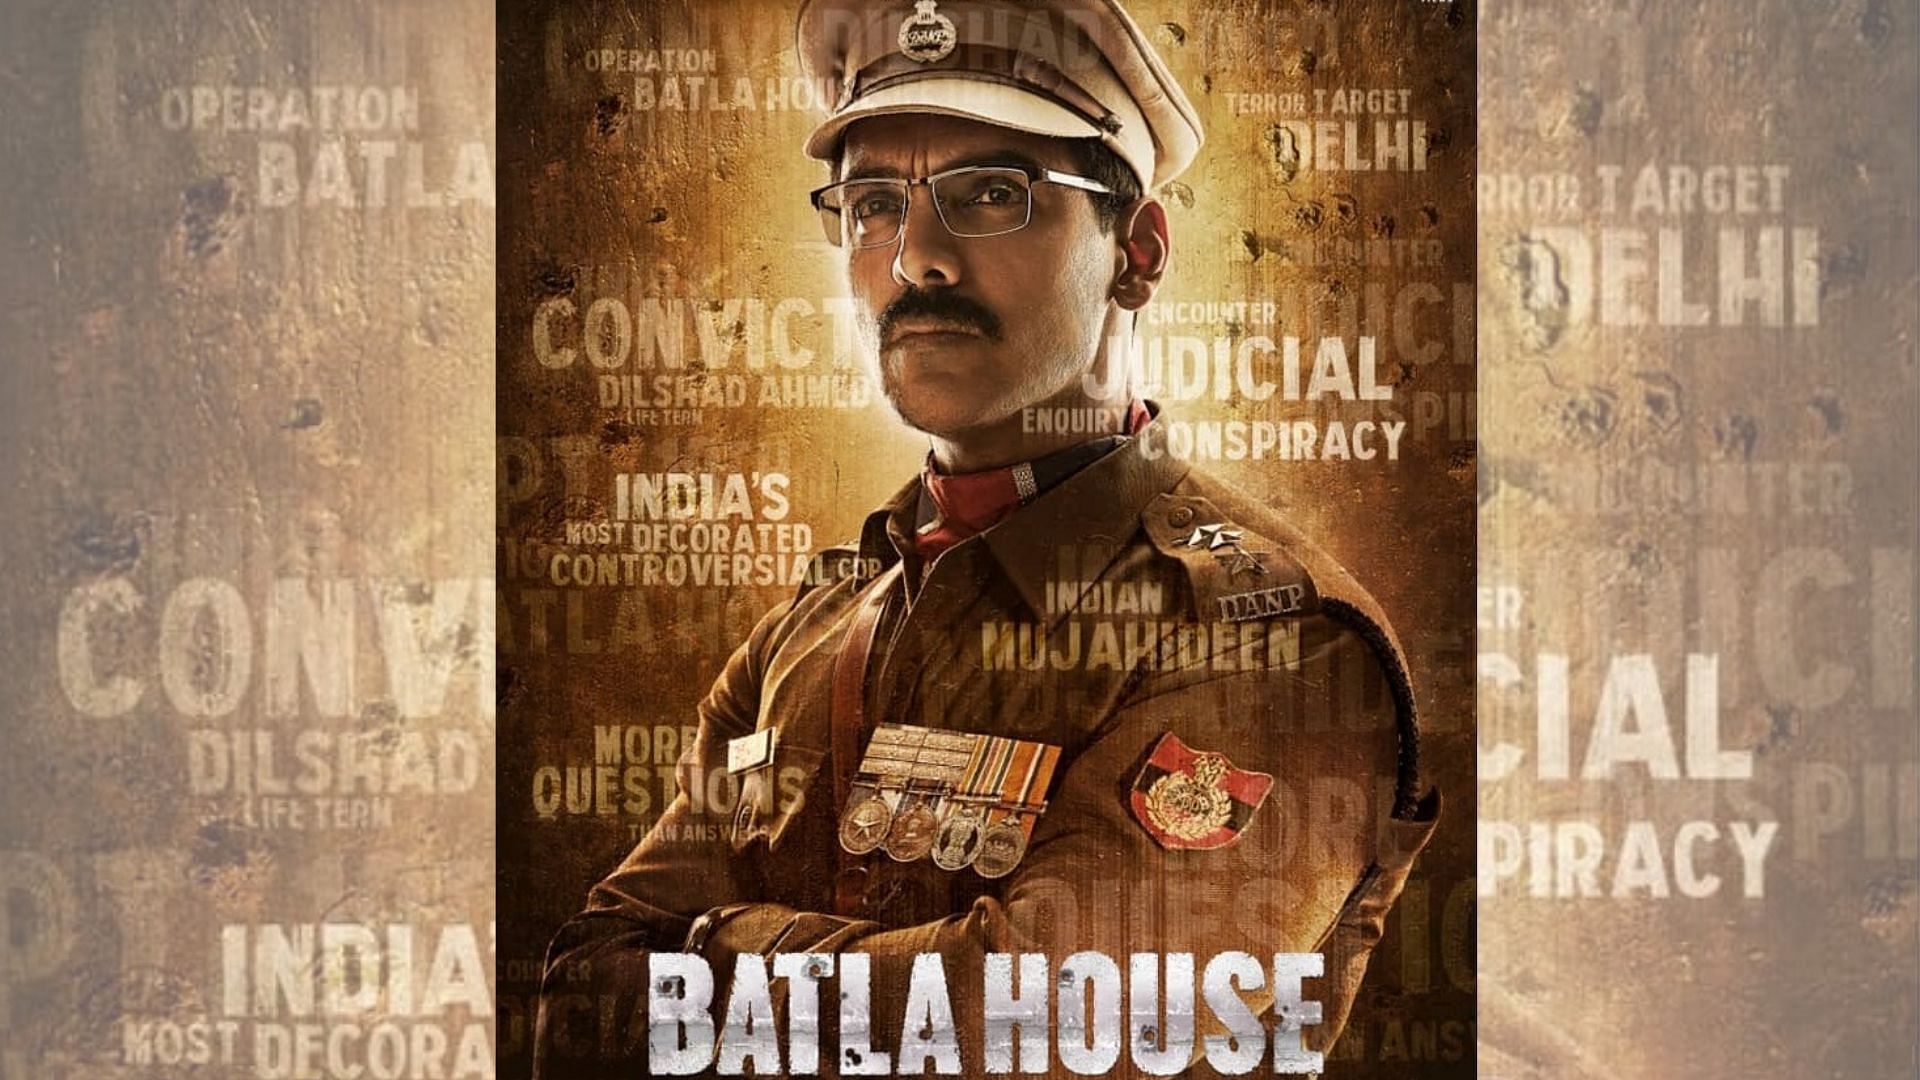 दिल्ली के जामिया नगर में हुए बाटला हाउस एनकाउंटर में शामिल पुलिस अफसर की कहानी दिखाएगी फिल्म